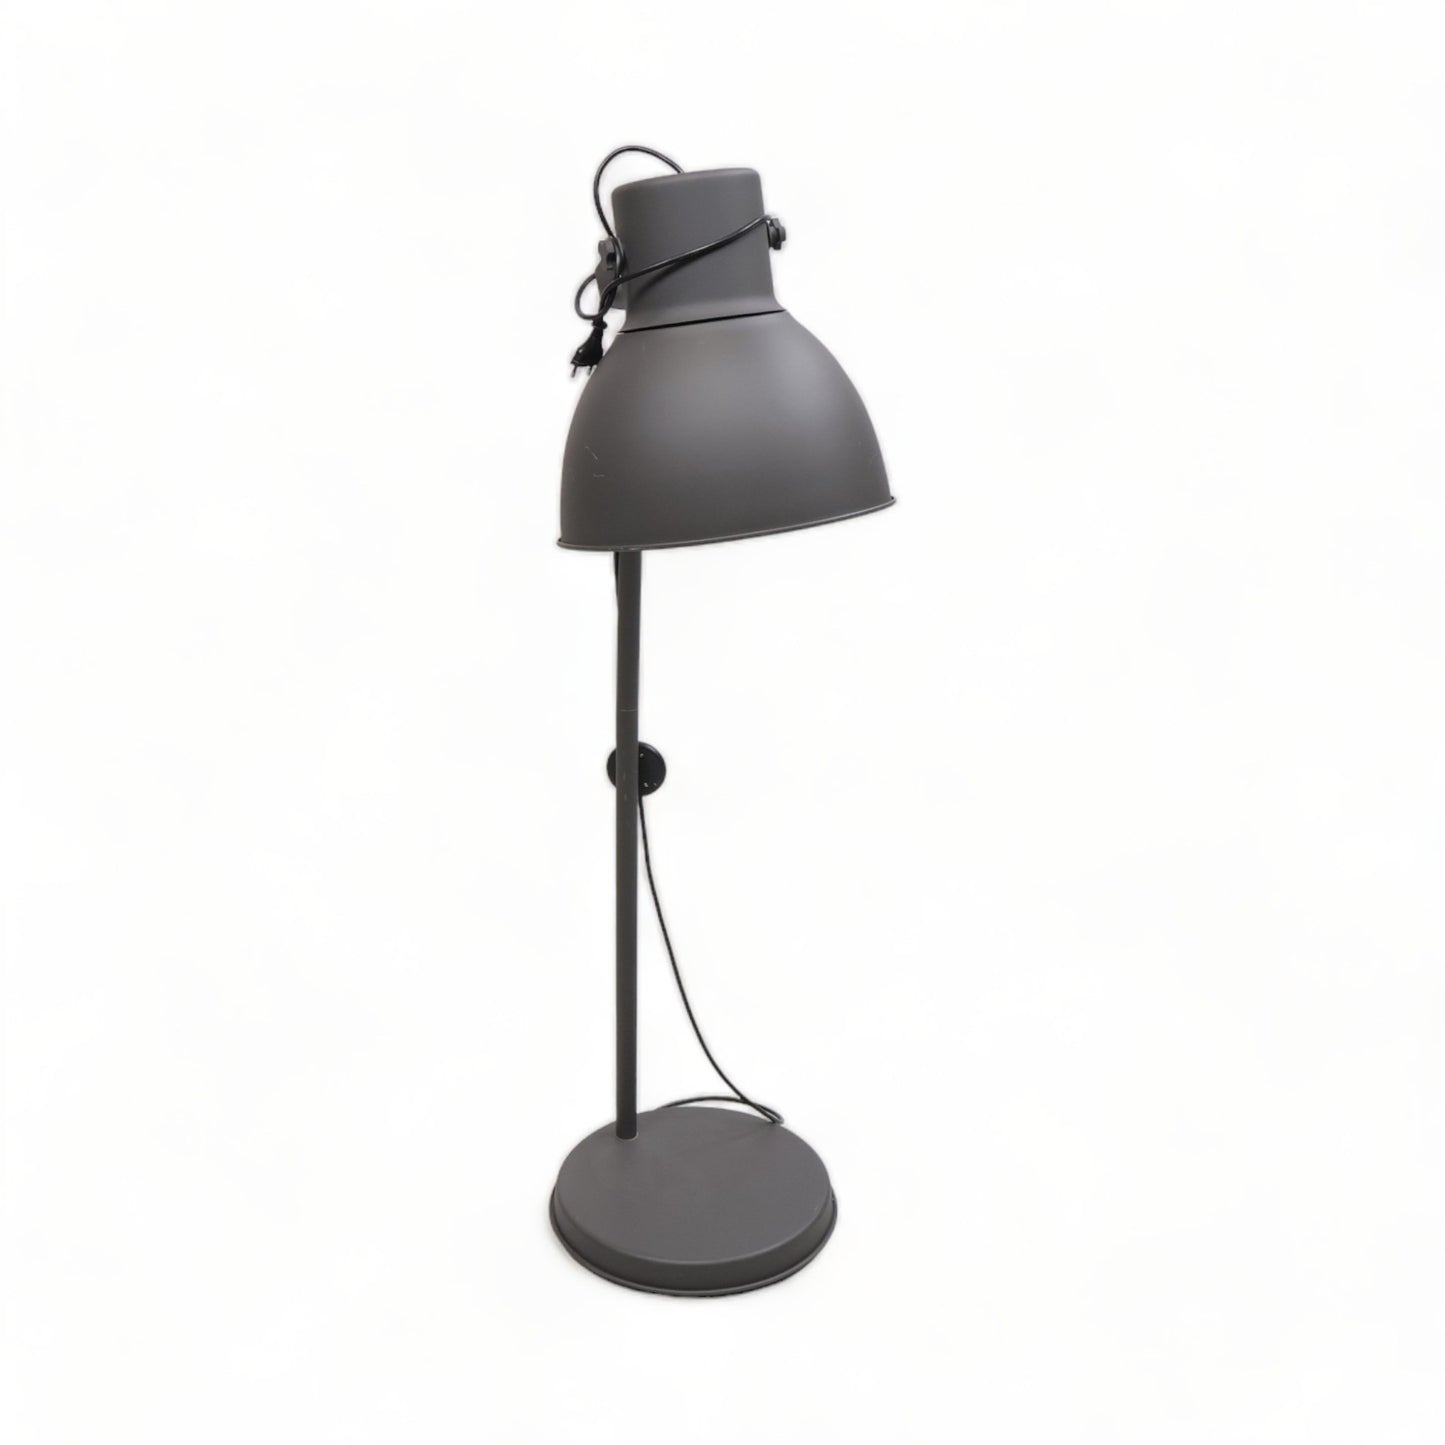 Kvalitetssikret | Robust og solid lampe i fargen grå